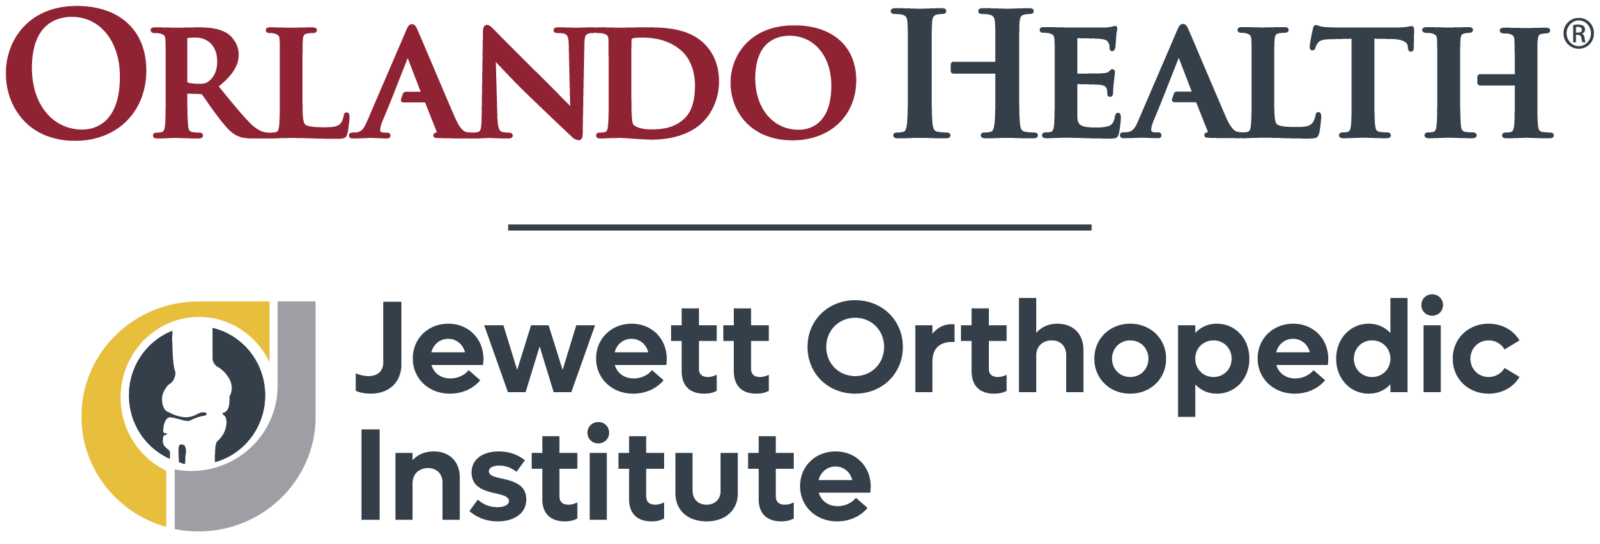 Orlando Health Jewett Orthopedic Institute First Tee Sponsor